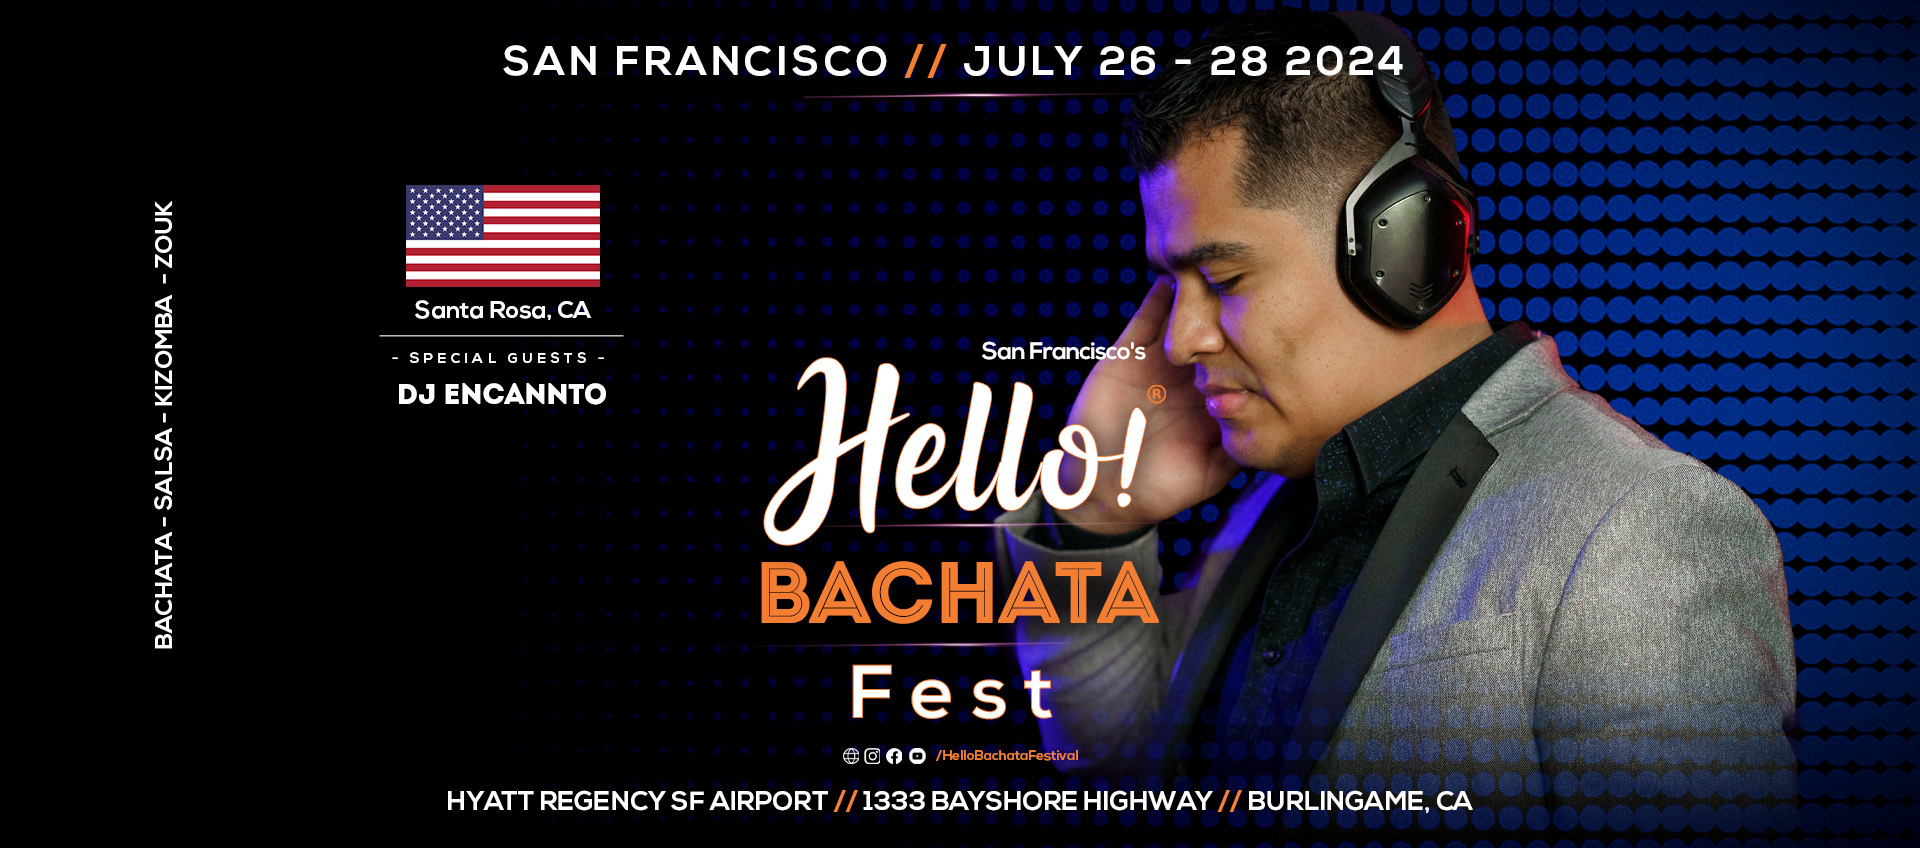 Hello! Bachata Fest - DJ Encannto - Bachata - Santa Rosa